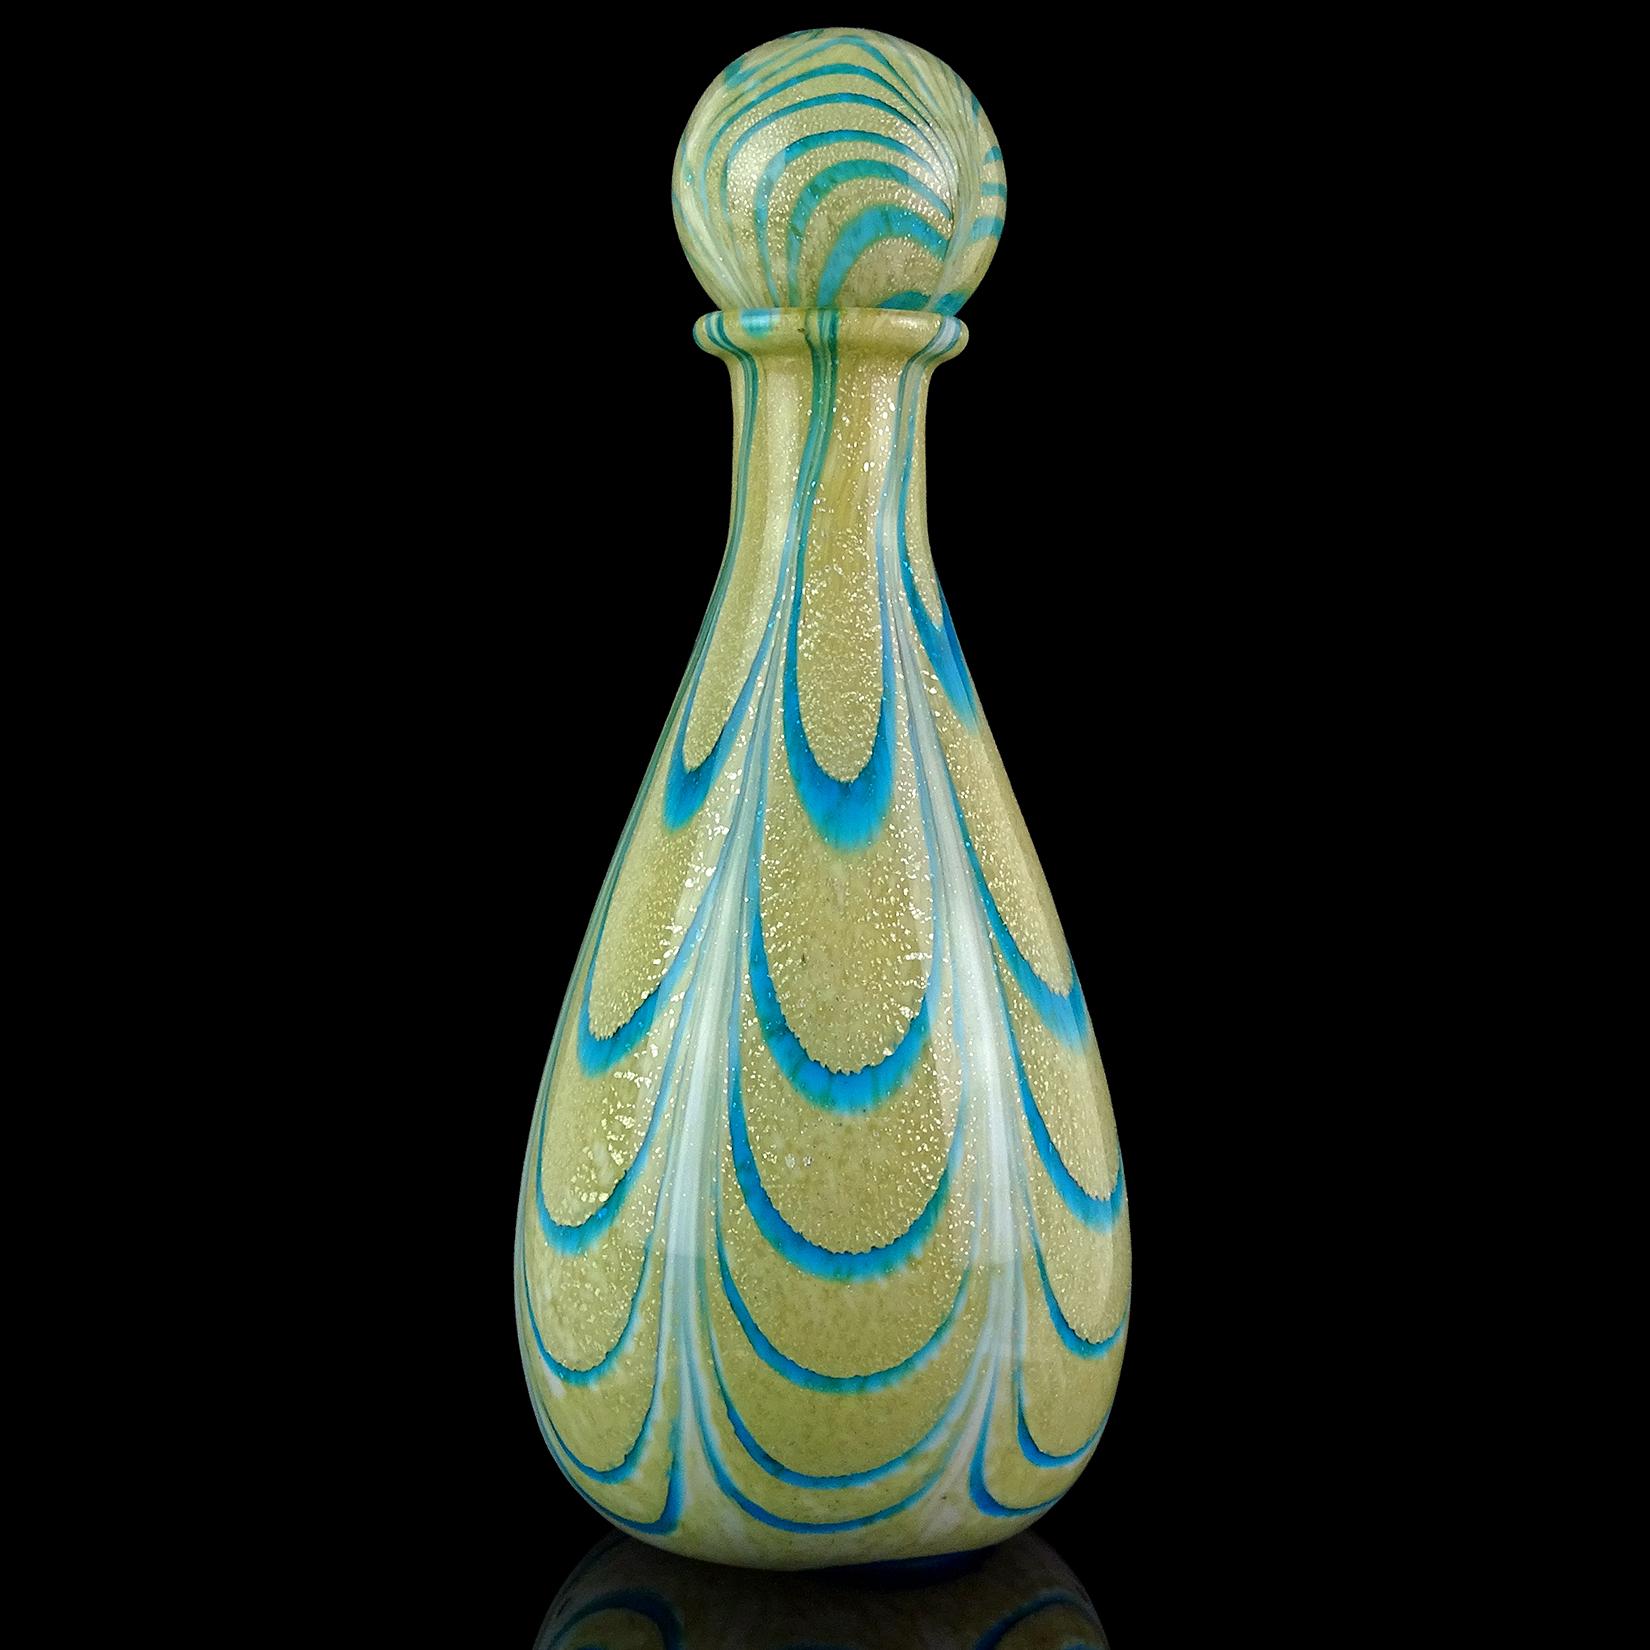 Magnifique carafe vintage en verre d'art italien soufflé à la main de Murano, avec des mouchetures d'argent, un tourbillon bleu aqua et un doux jaune crème. Attribué au designer Franco Moretti, vers les années 1970. Créé dans le décor 